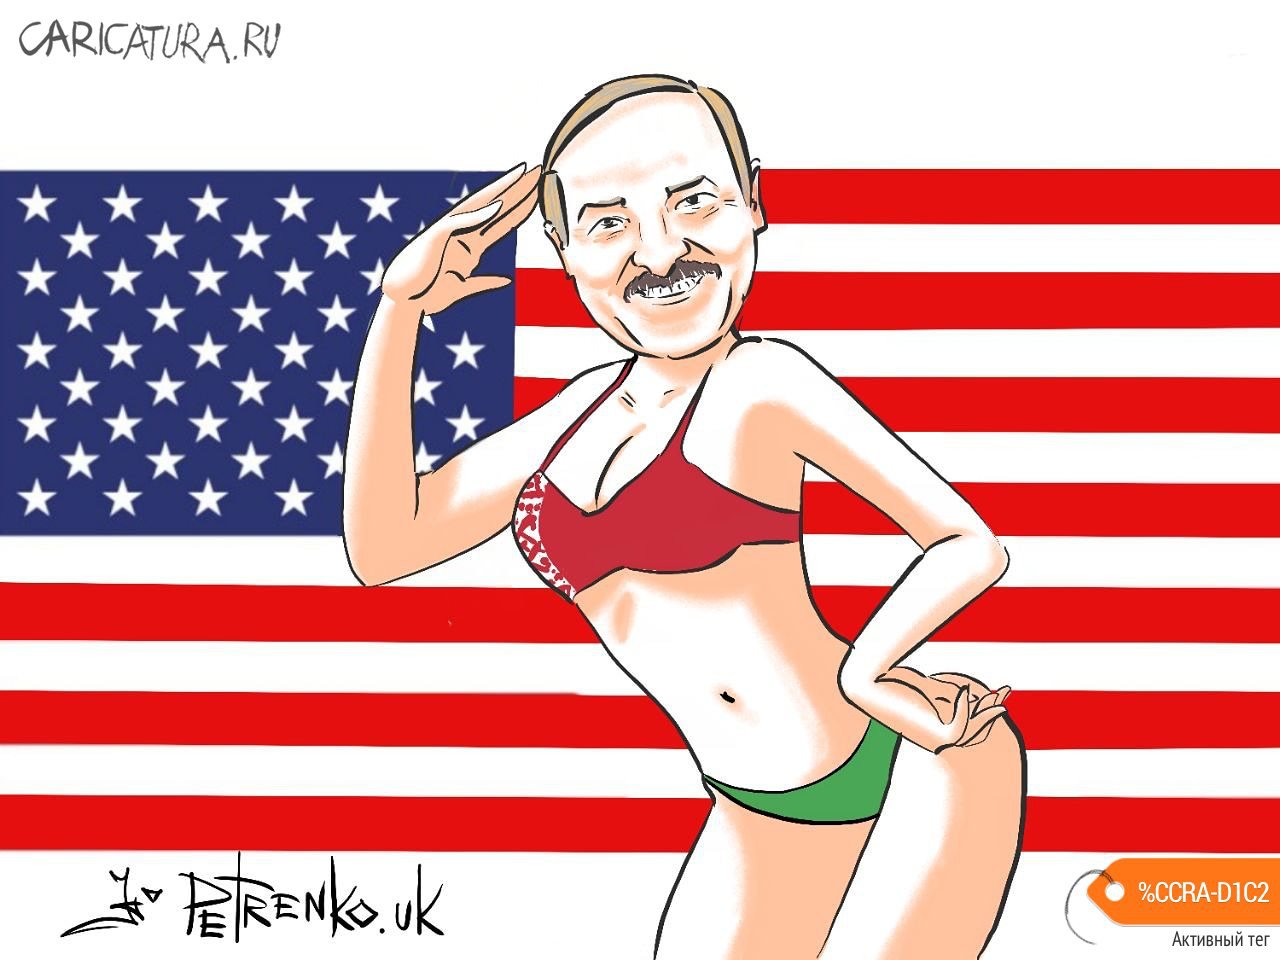 Карикатура "Лукашэнка - бацька ўсёй Амерыкі...", Андрей Петренко